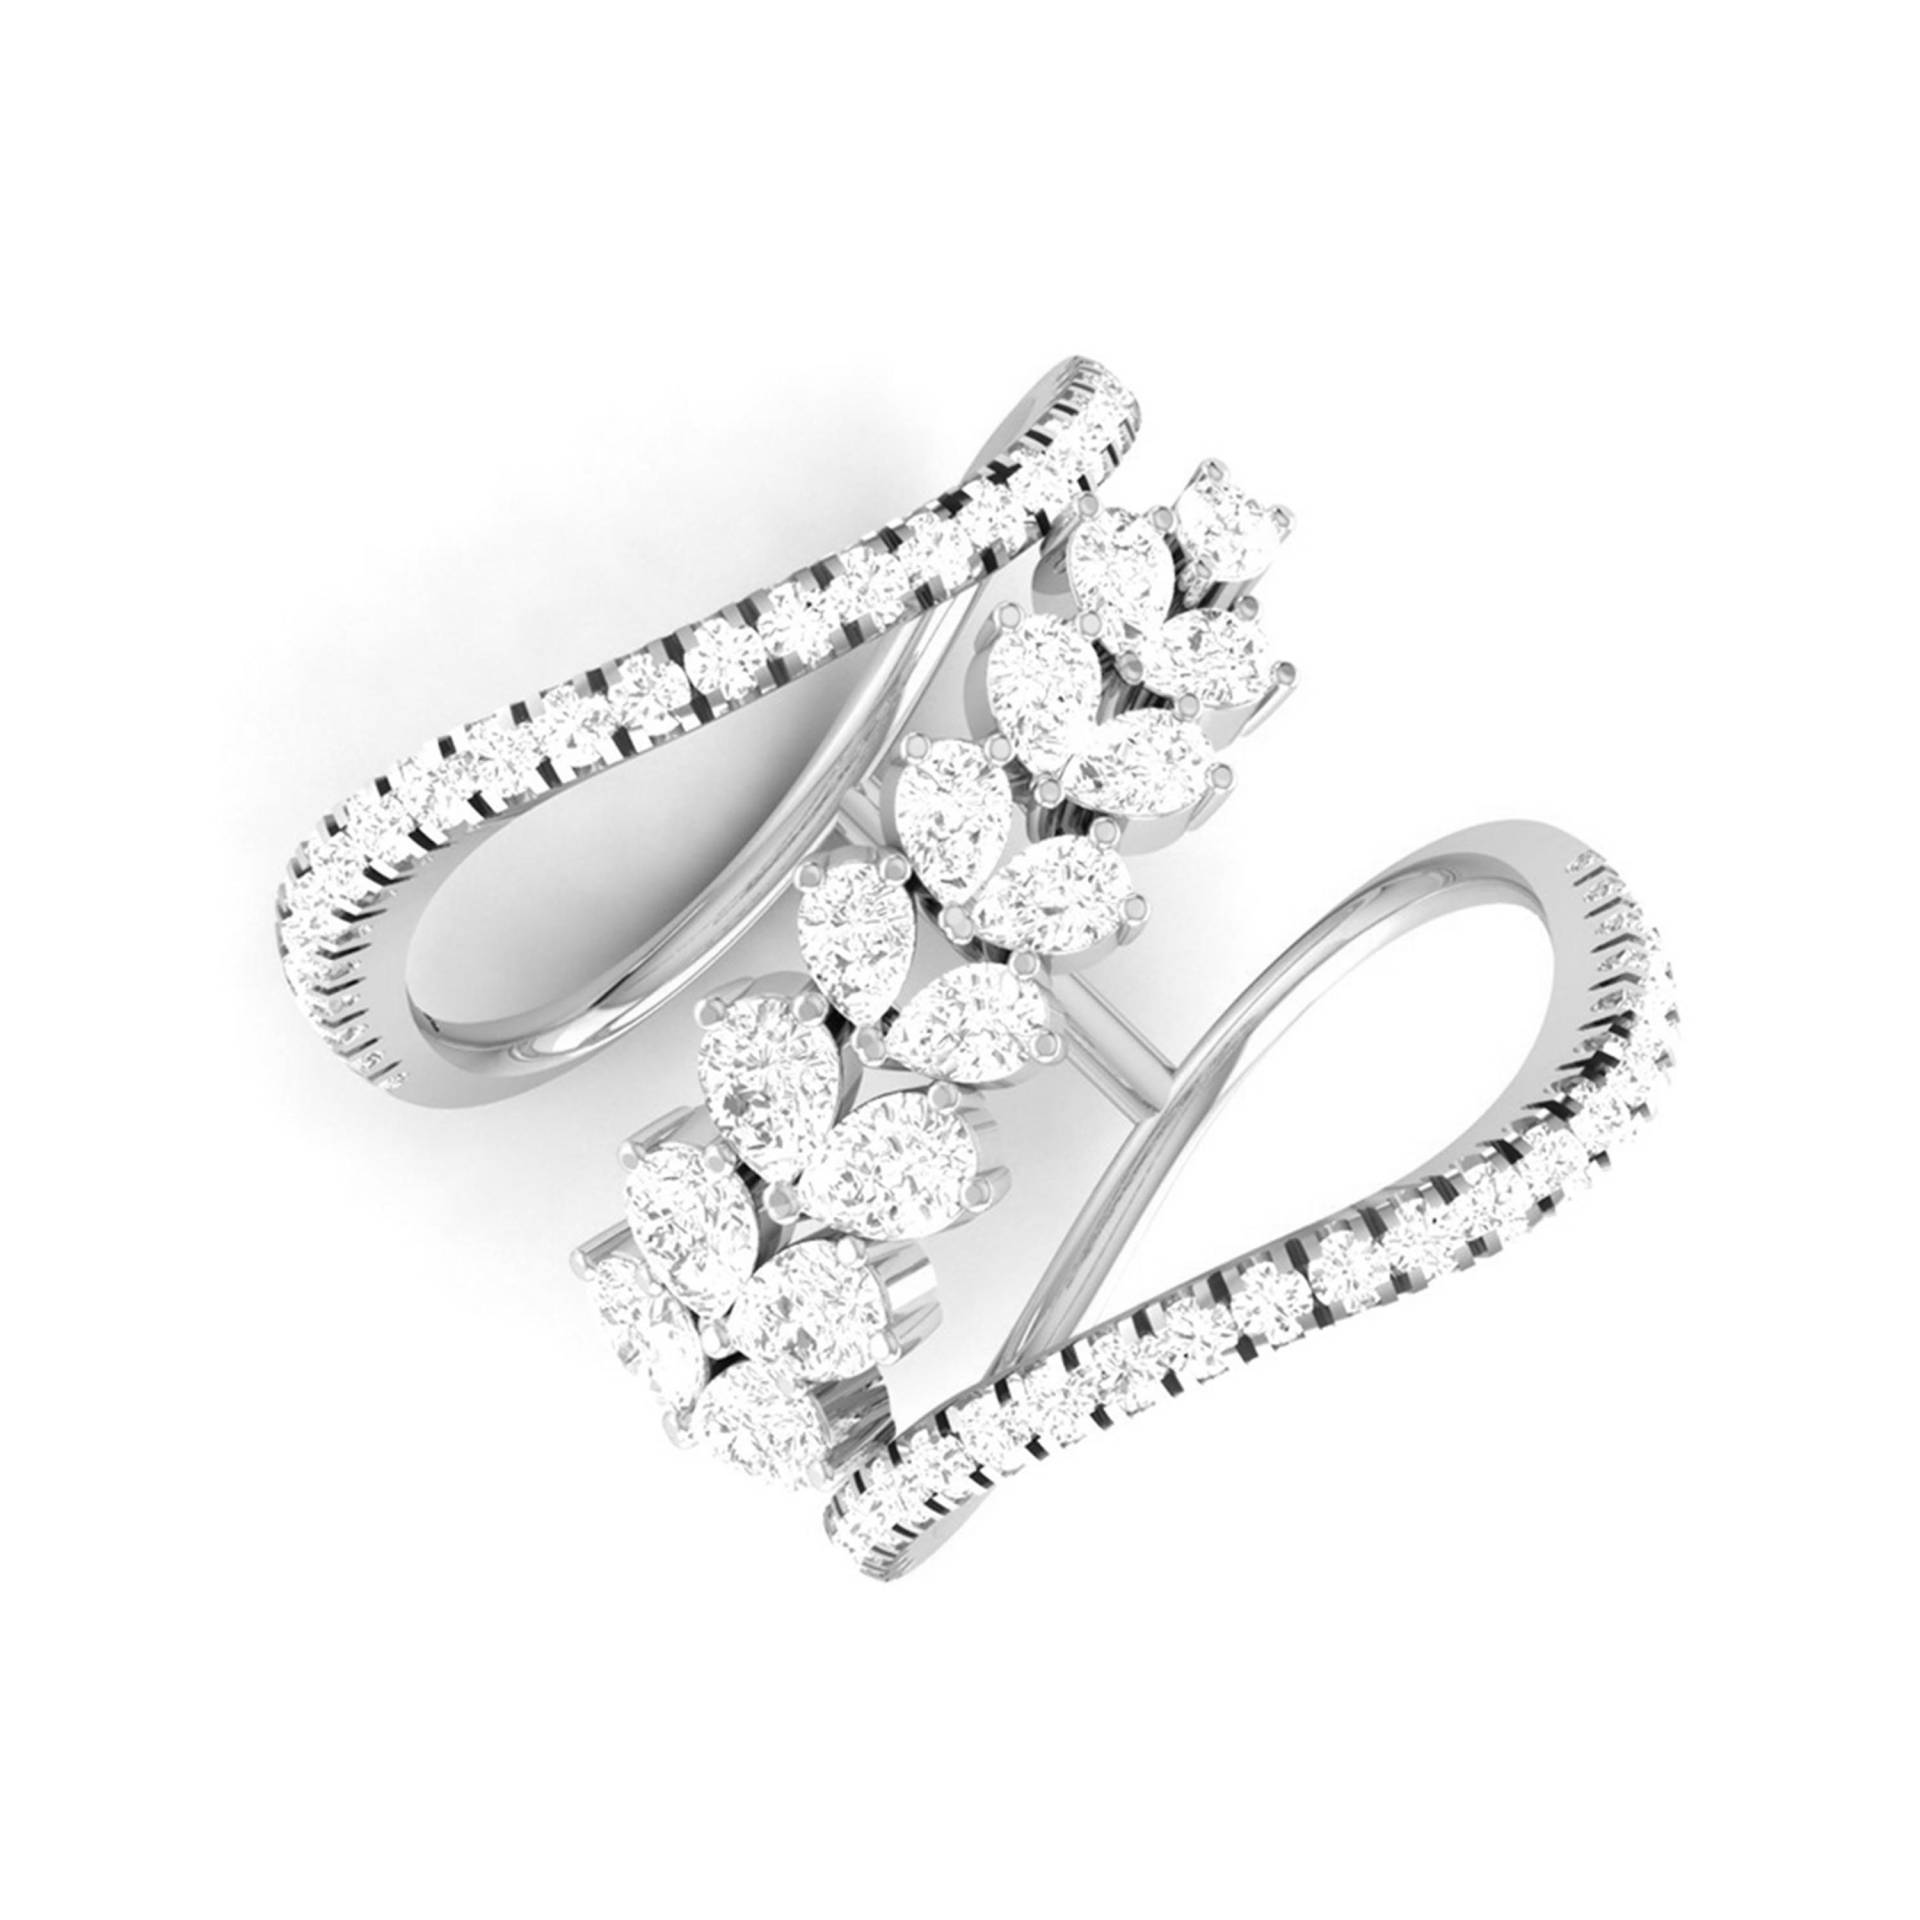 Platin Birne Marquise Ring Mit Diamanten Für Frauen Jl Pt Dm 0052 von Jewelove